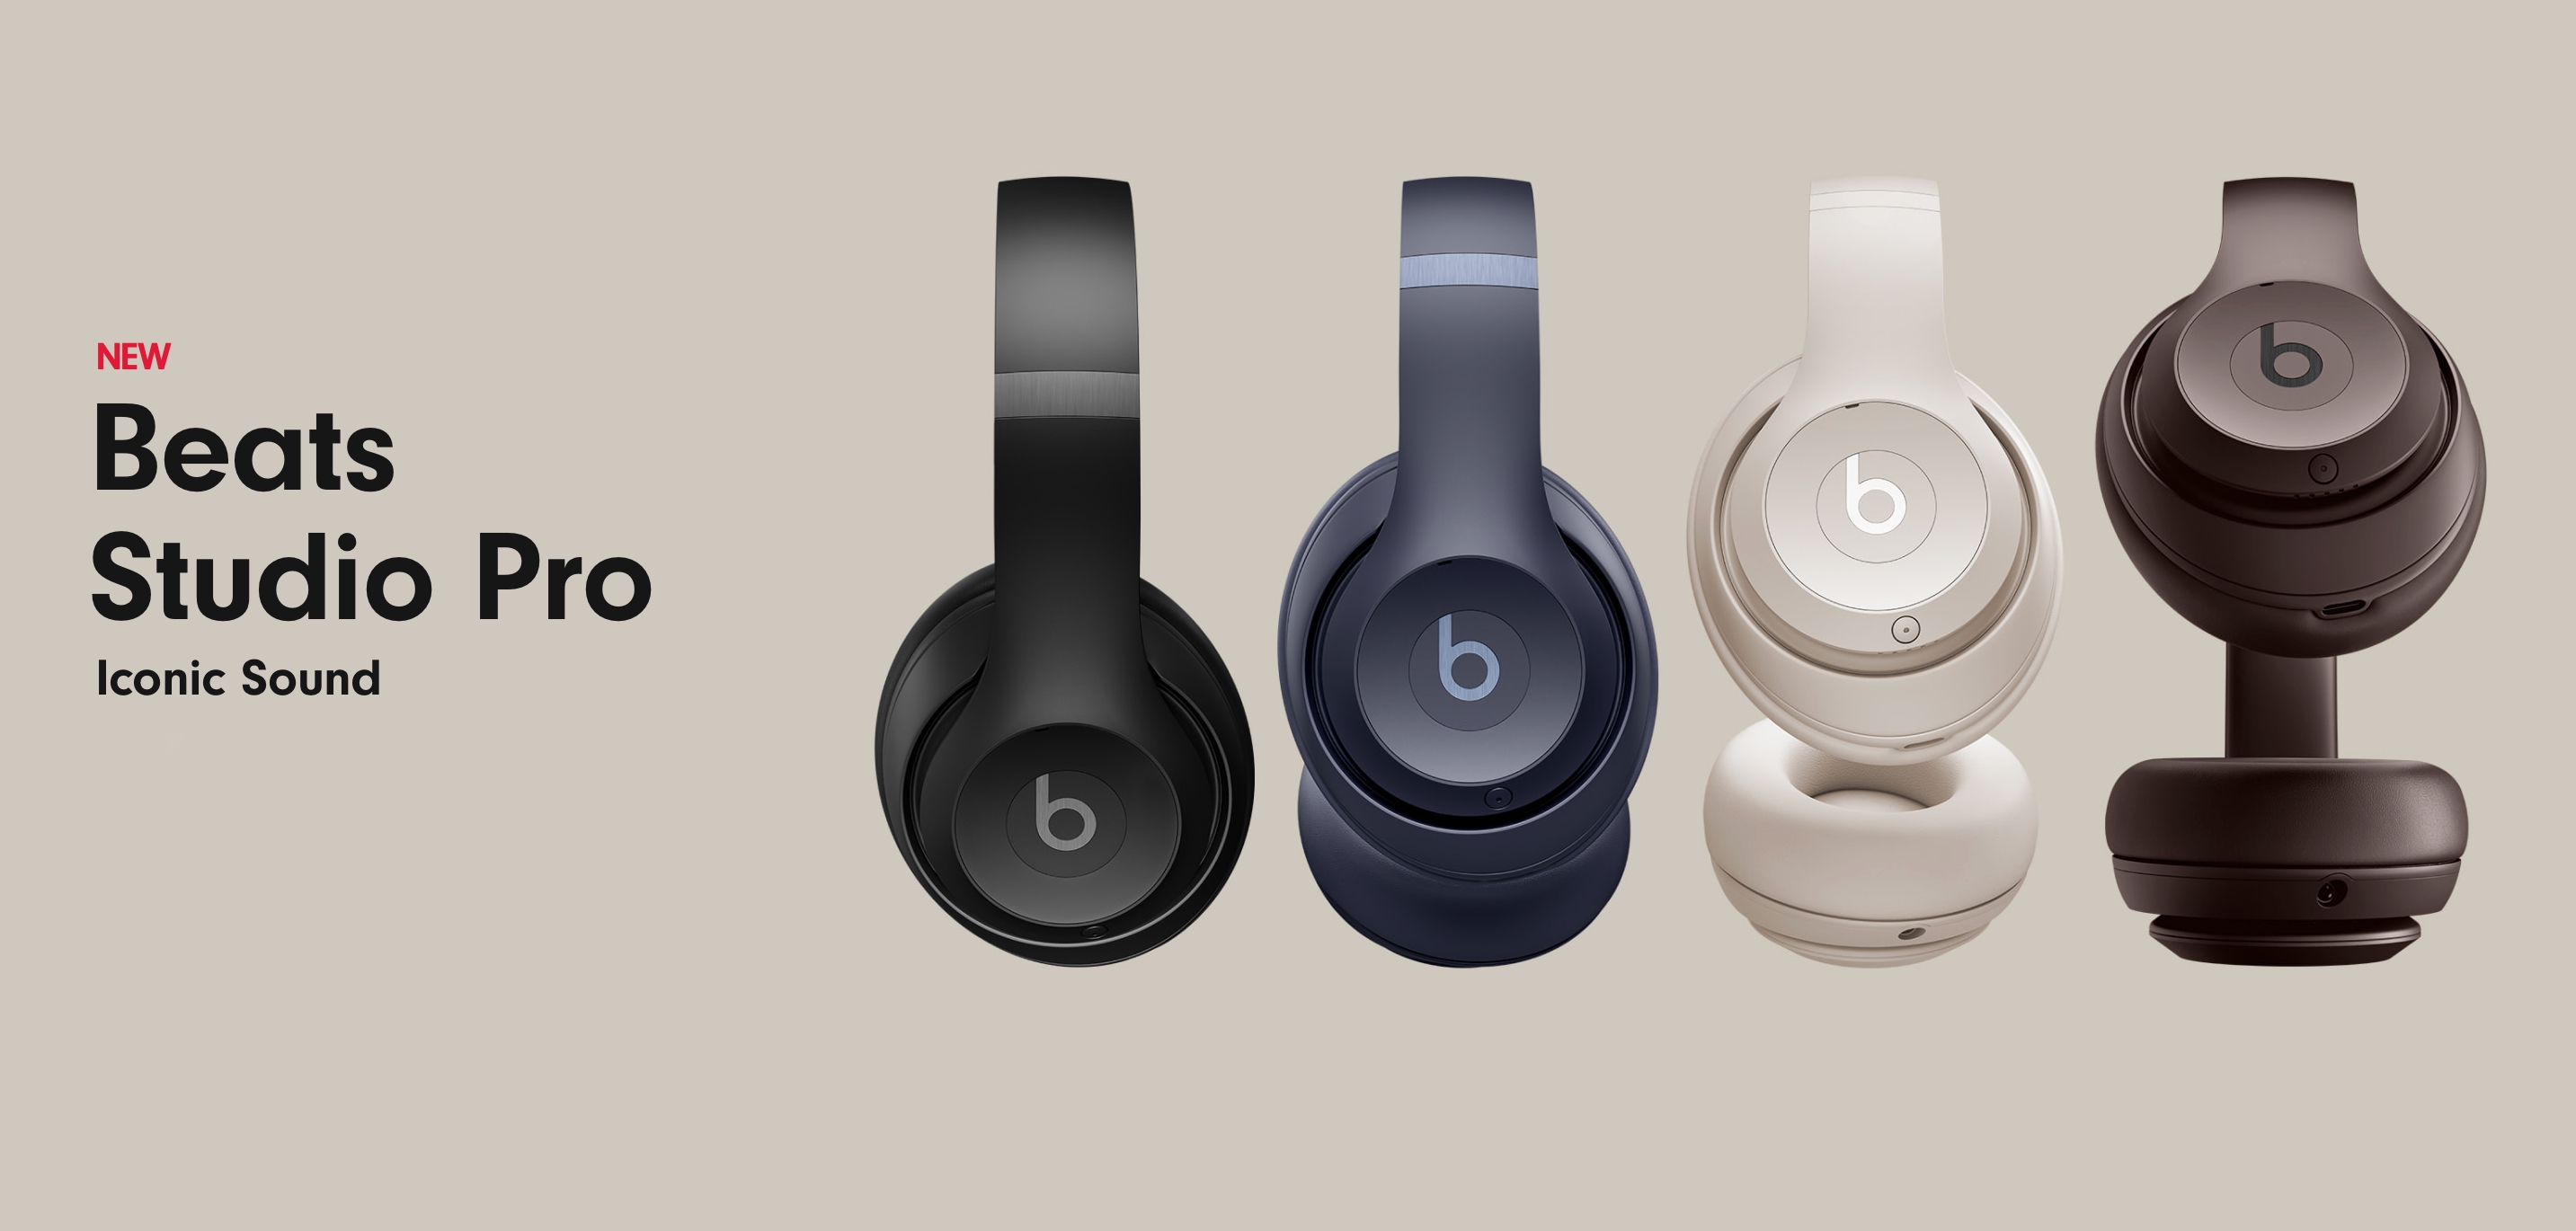 Apple ha presentato il Beats Studio Pro con audio migliorato, ANC, USB-C, Spatial Audio e fino a 40 ore di durata della batteria a 349 dollari